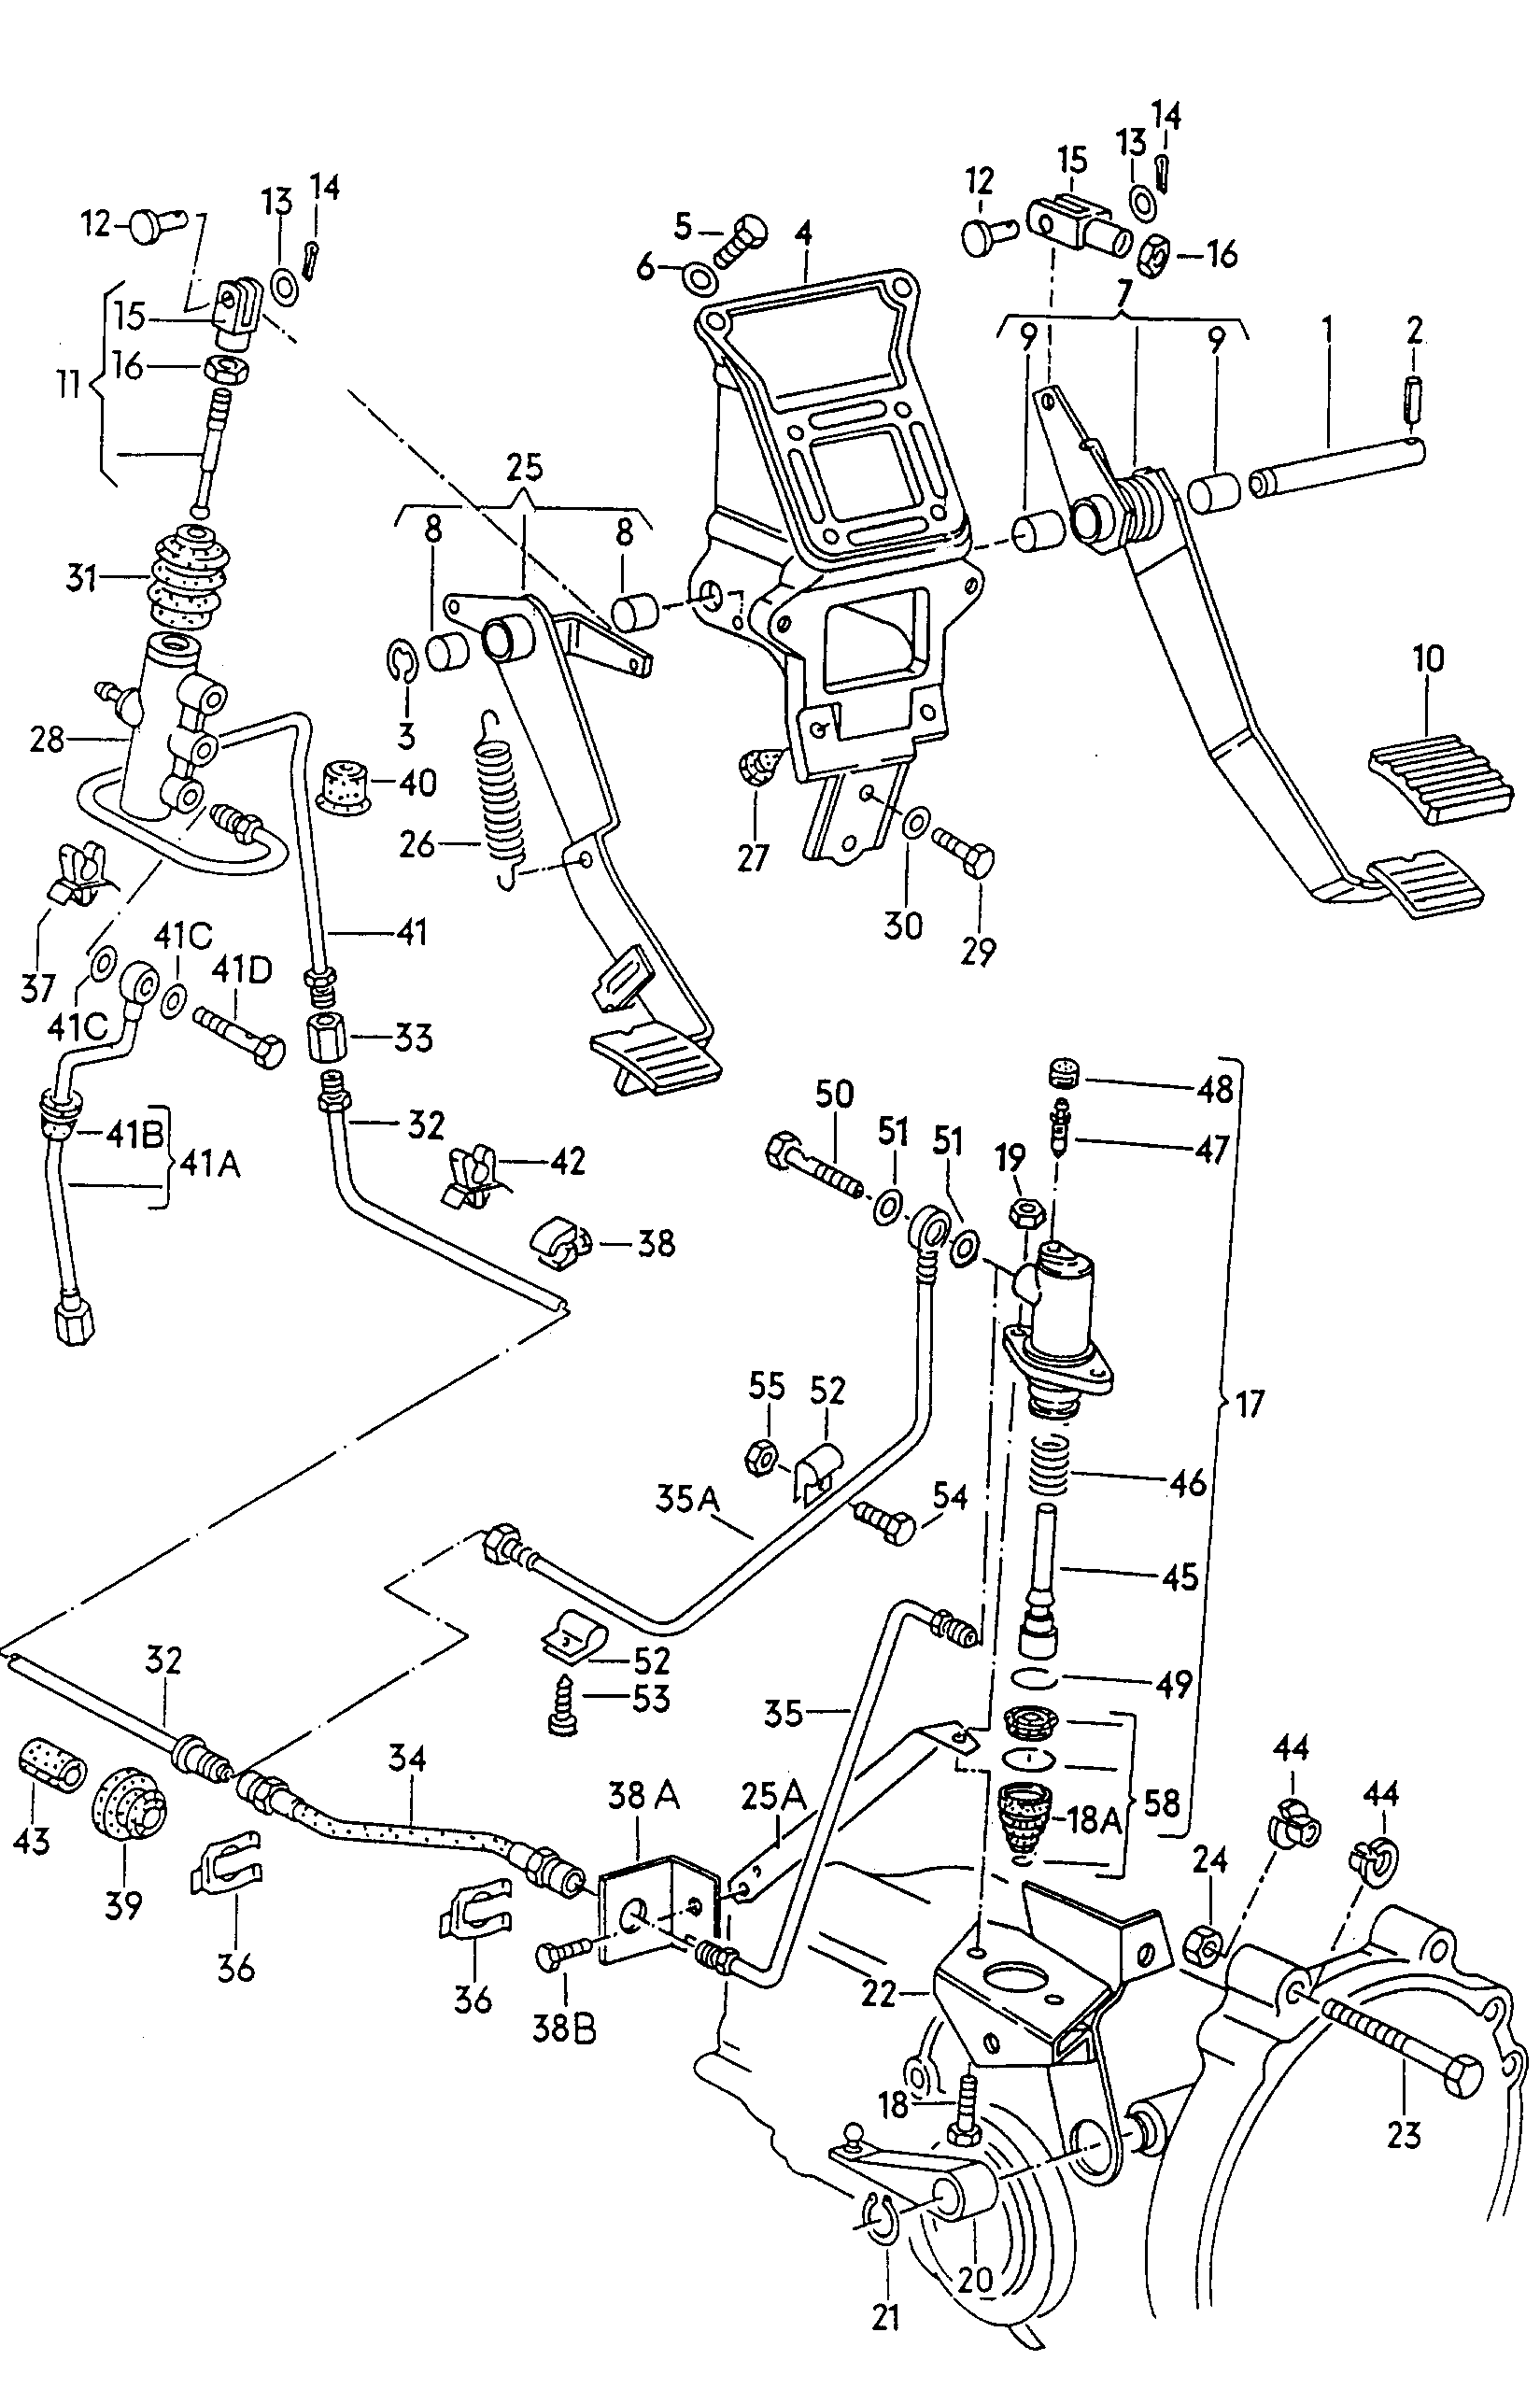 Brems- und Kupplungsfusshebel-
werk; fuer hydraul... - Typ 2/syncro(T2)  